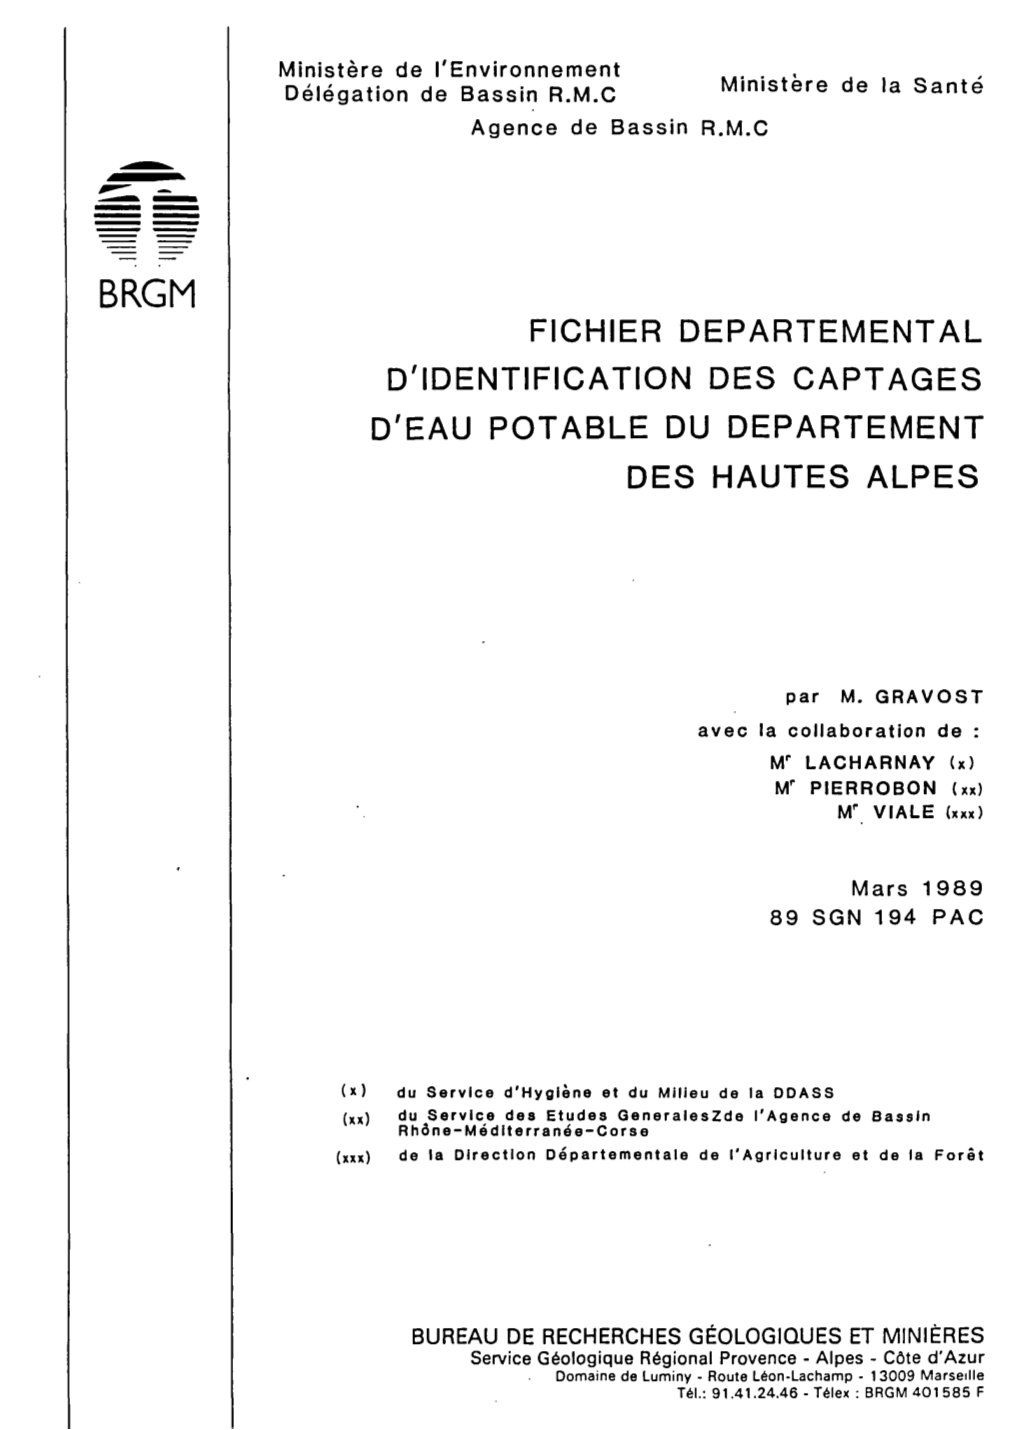 D'identification Des Captages D'eau Potable Du Departement Des Hautes Alpes